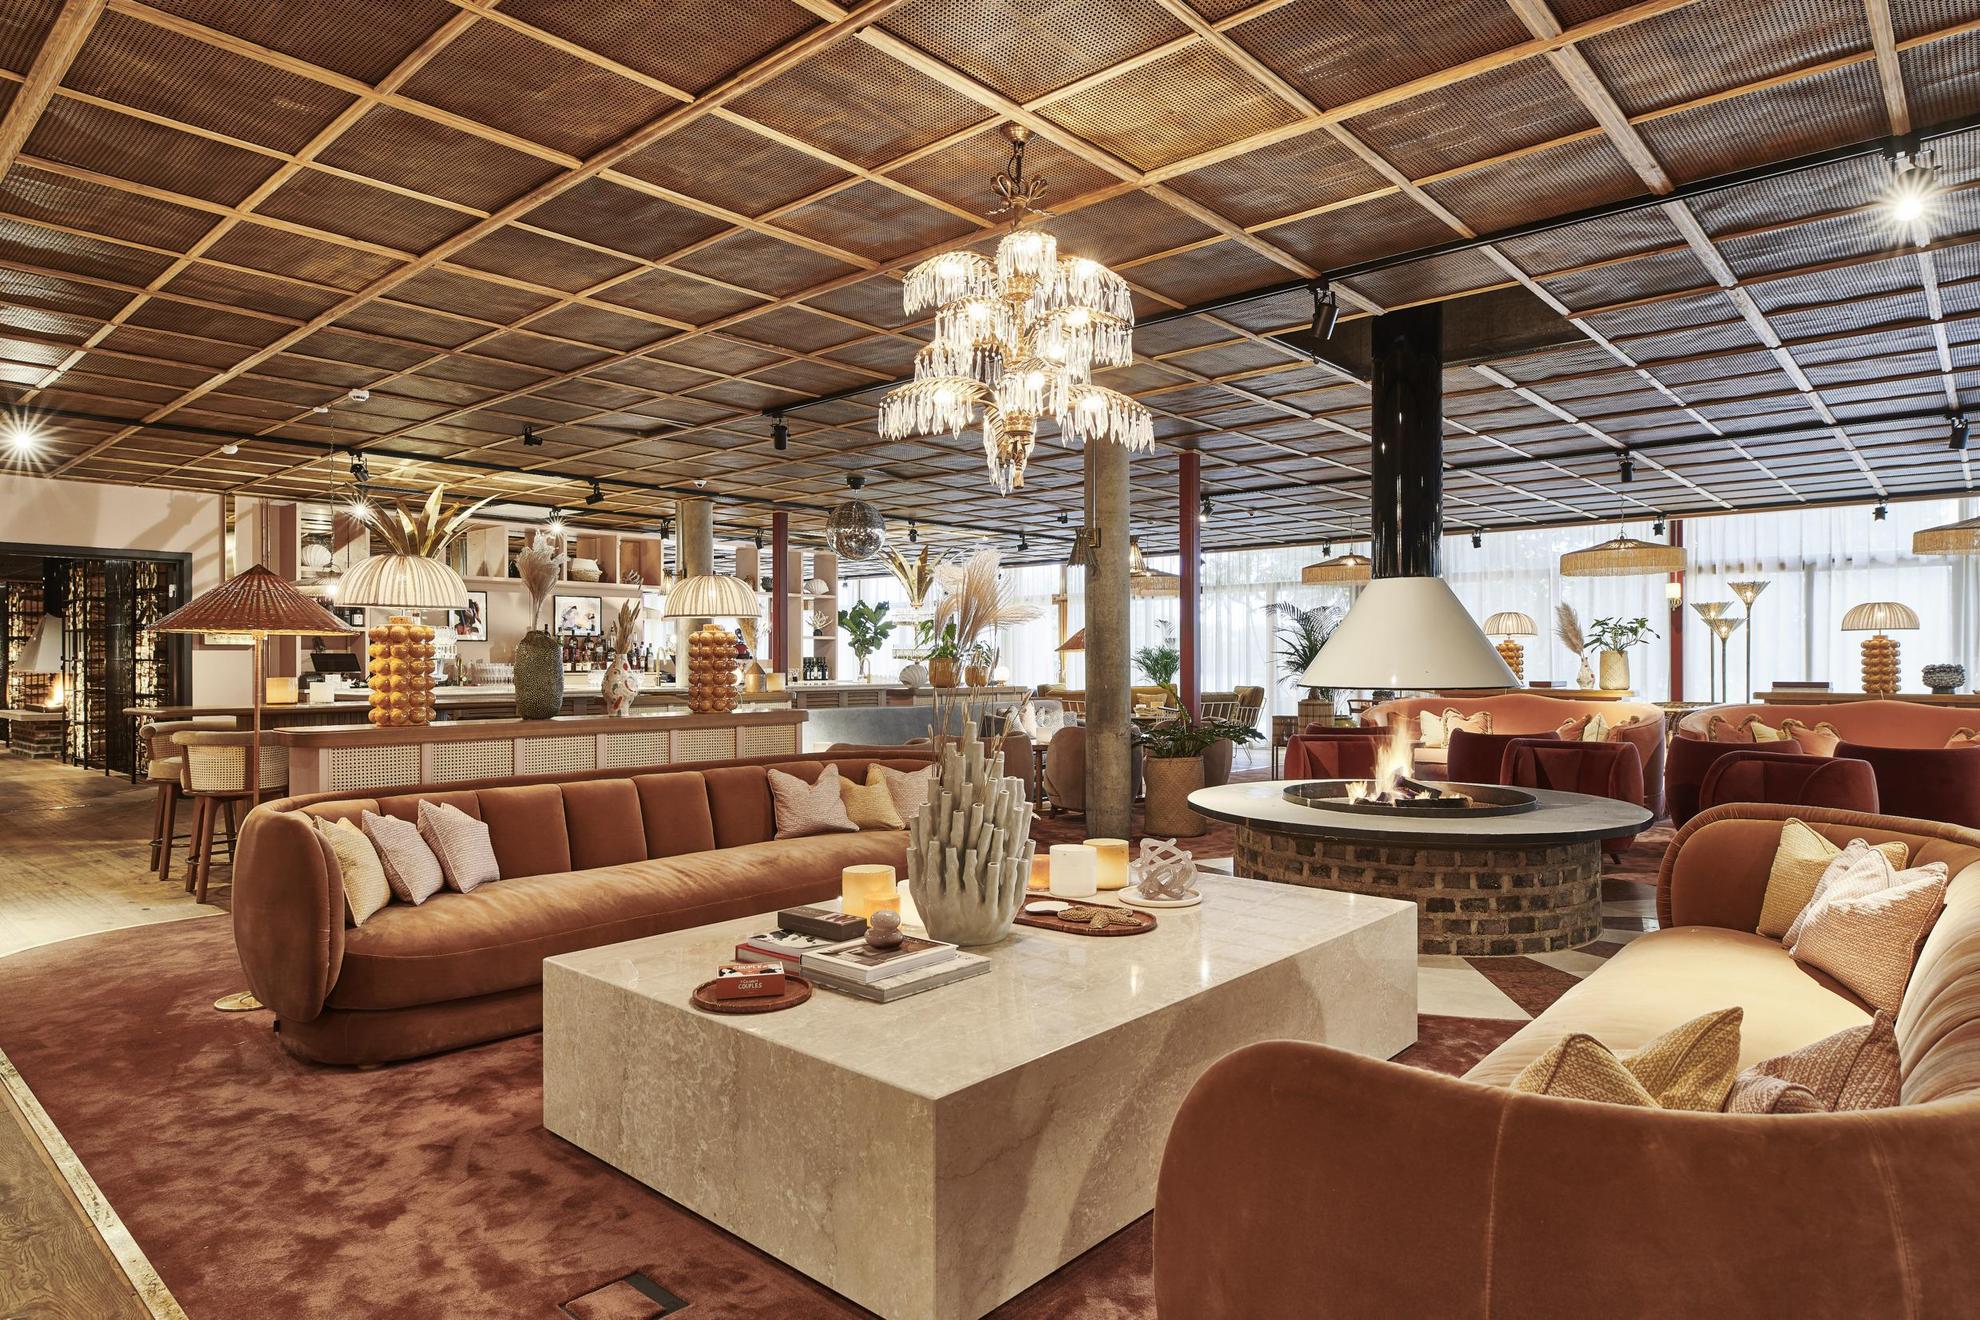 Een loungehoek gedecoreerd met banken en kussens in beige, bruin en lichtroze. In het midden van de kamer is een open haard.